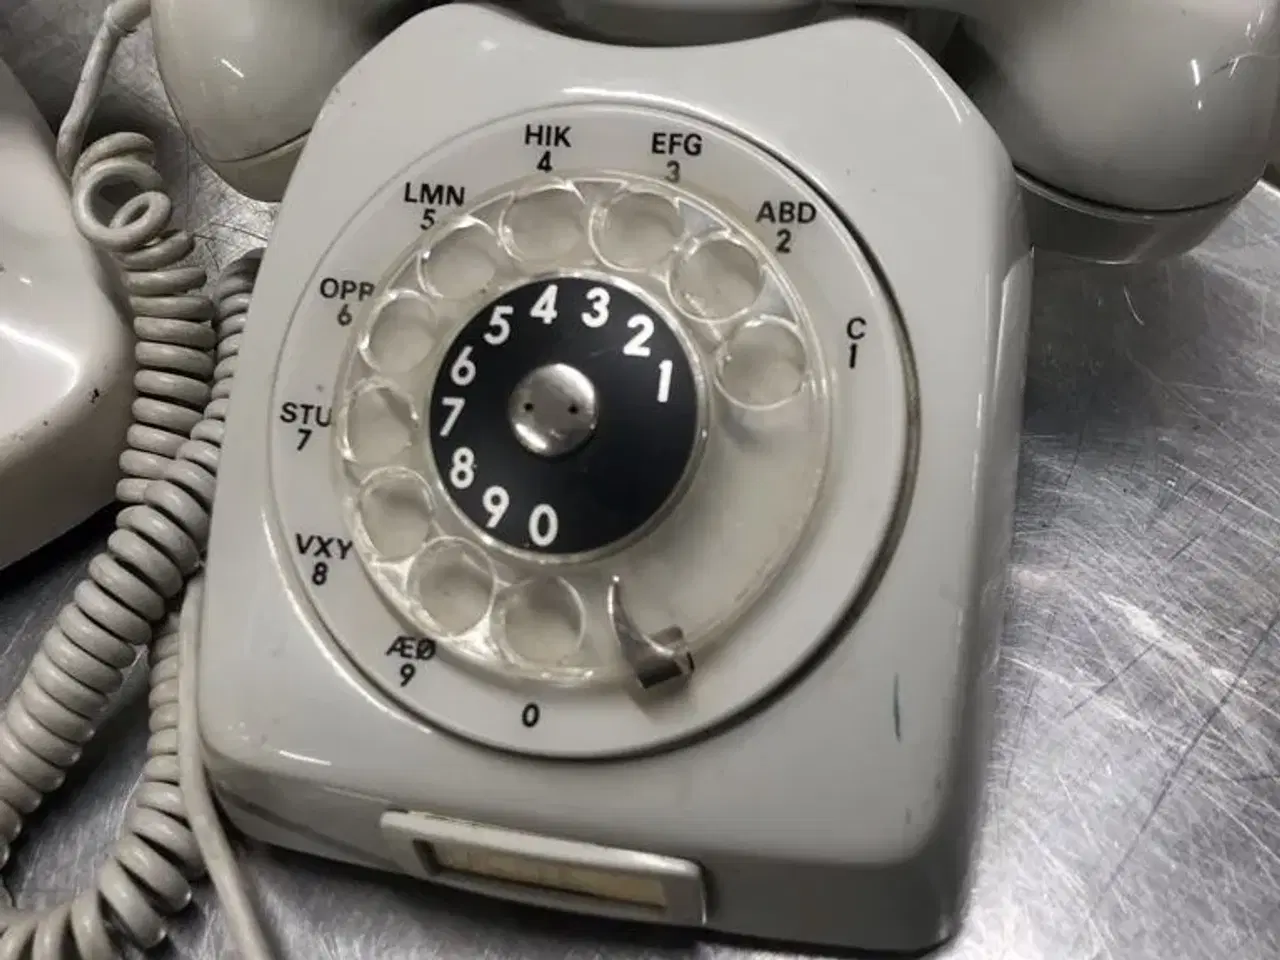 Billede 1 - Gamle telefoner